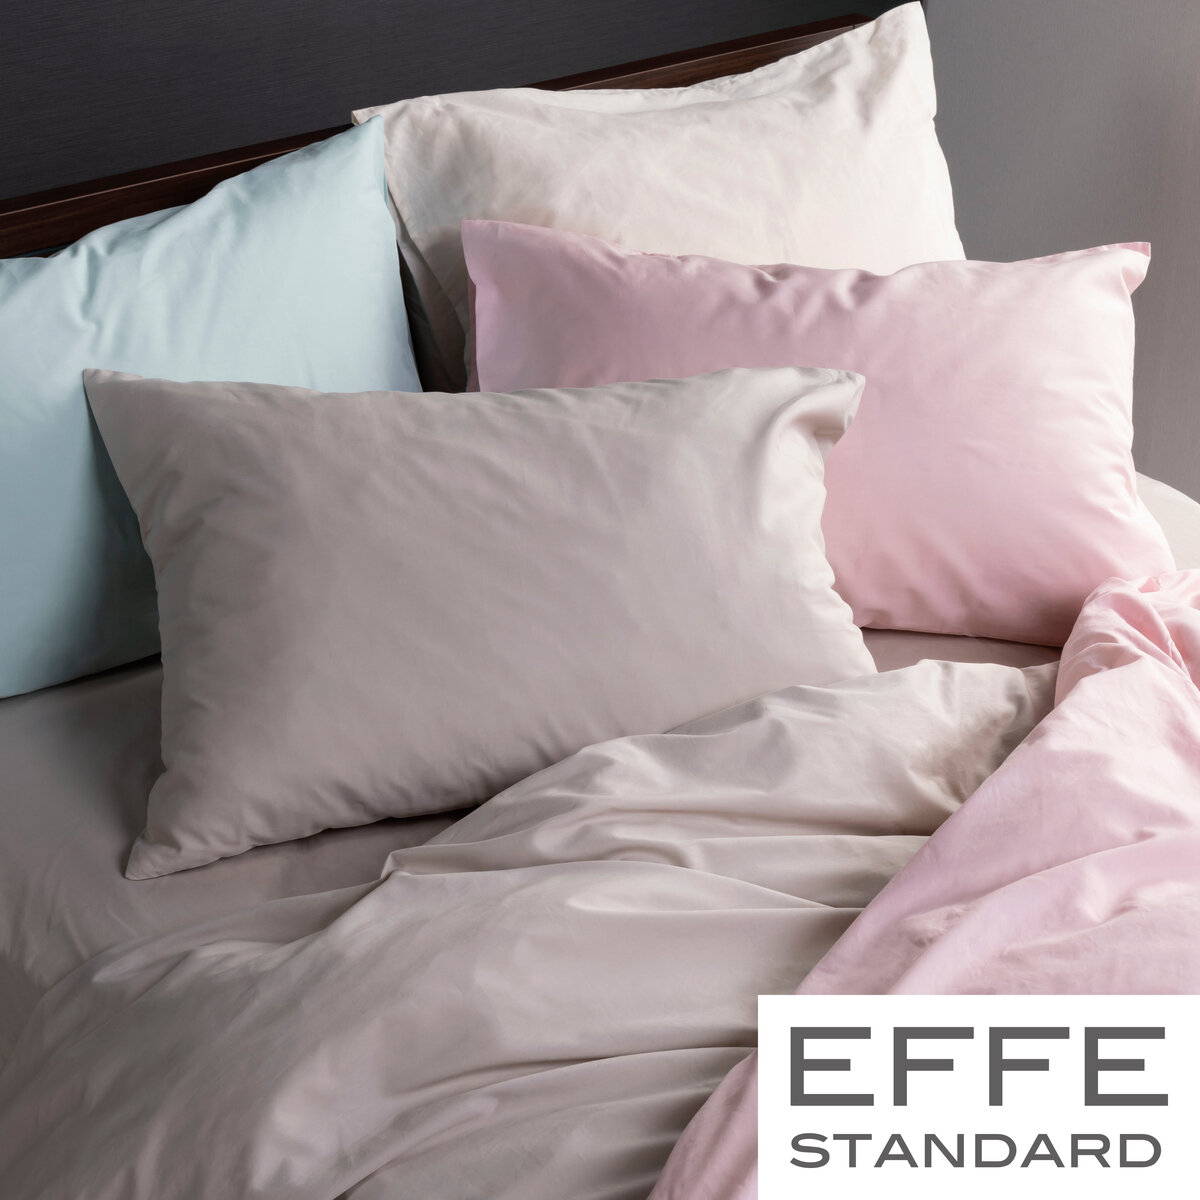 フランスベッド 寝装品 3点セット エッフェスタンダード ワイドダブル ピンク